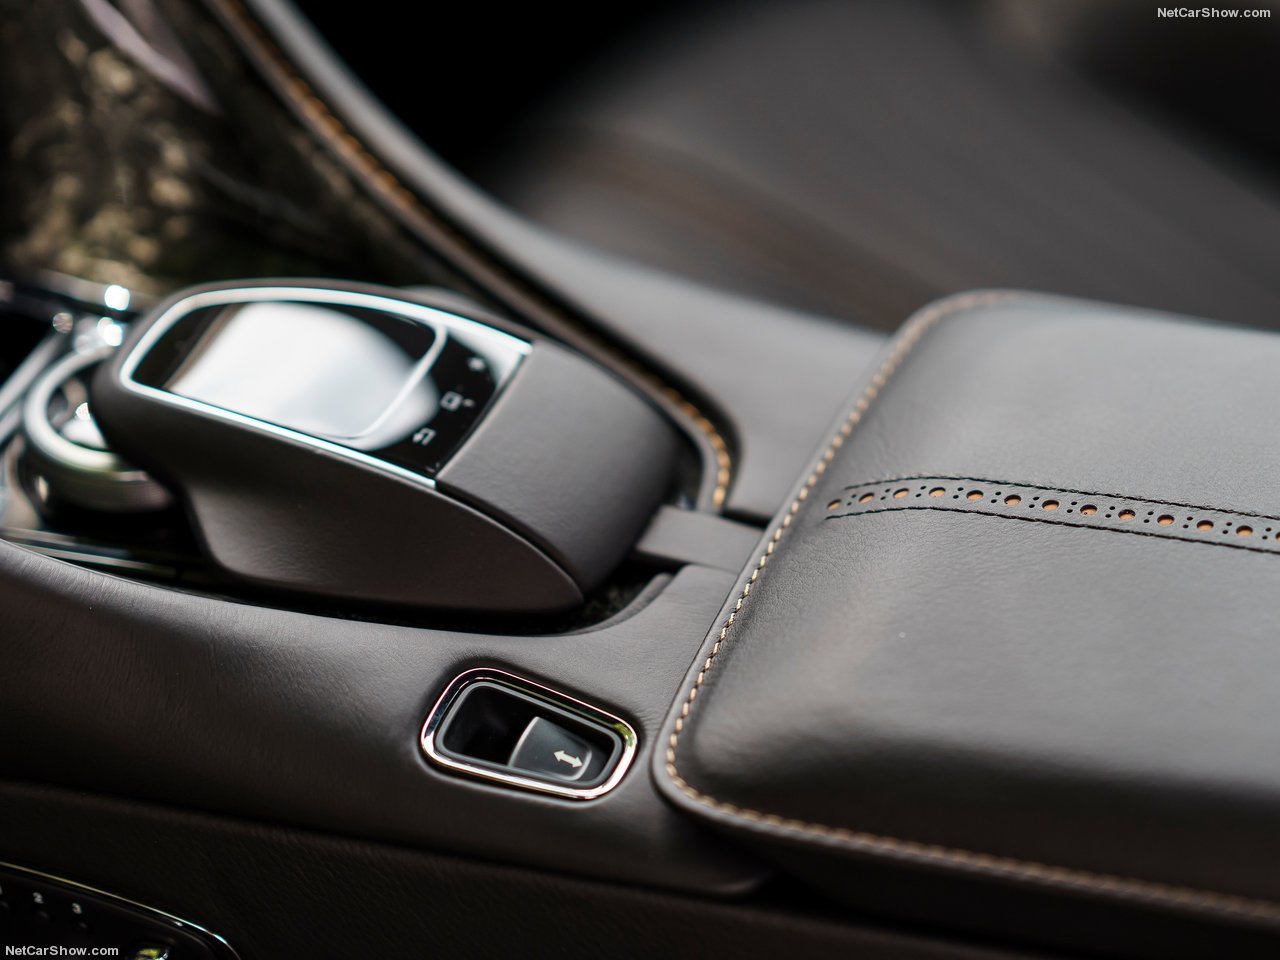 Aston Martin DB11 interior - Console And Controls